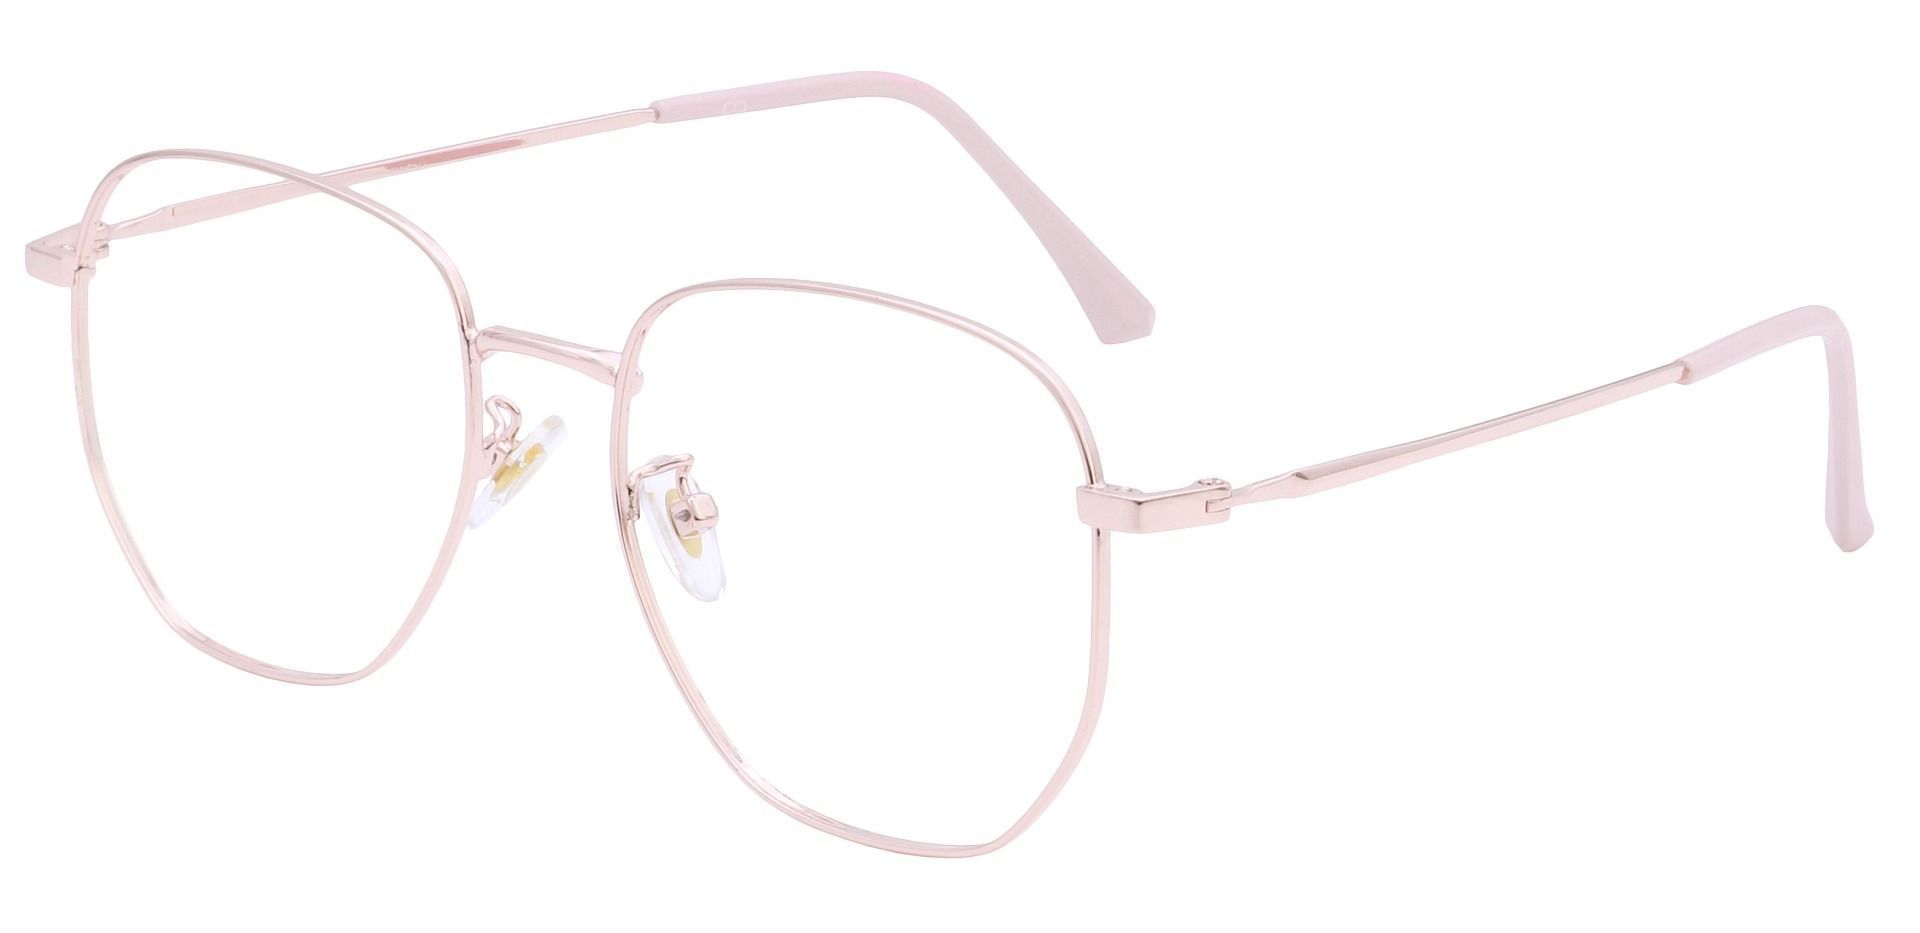 Studio Geometric Progressive Glasses - Pink